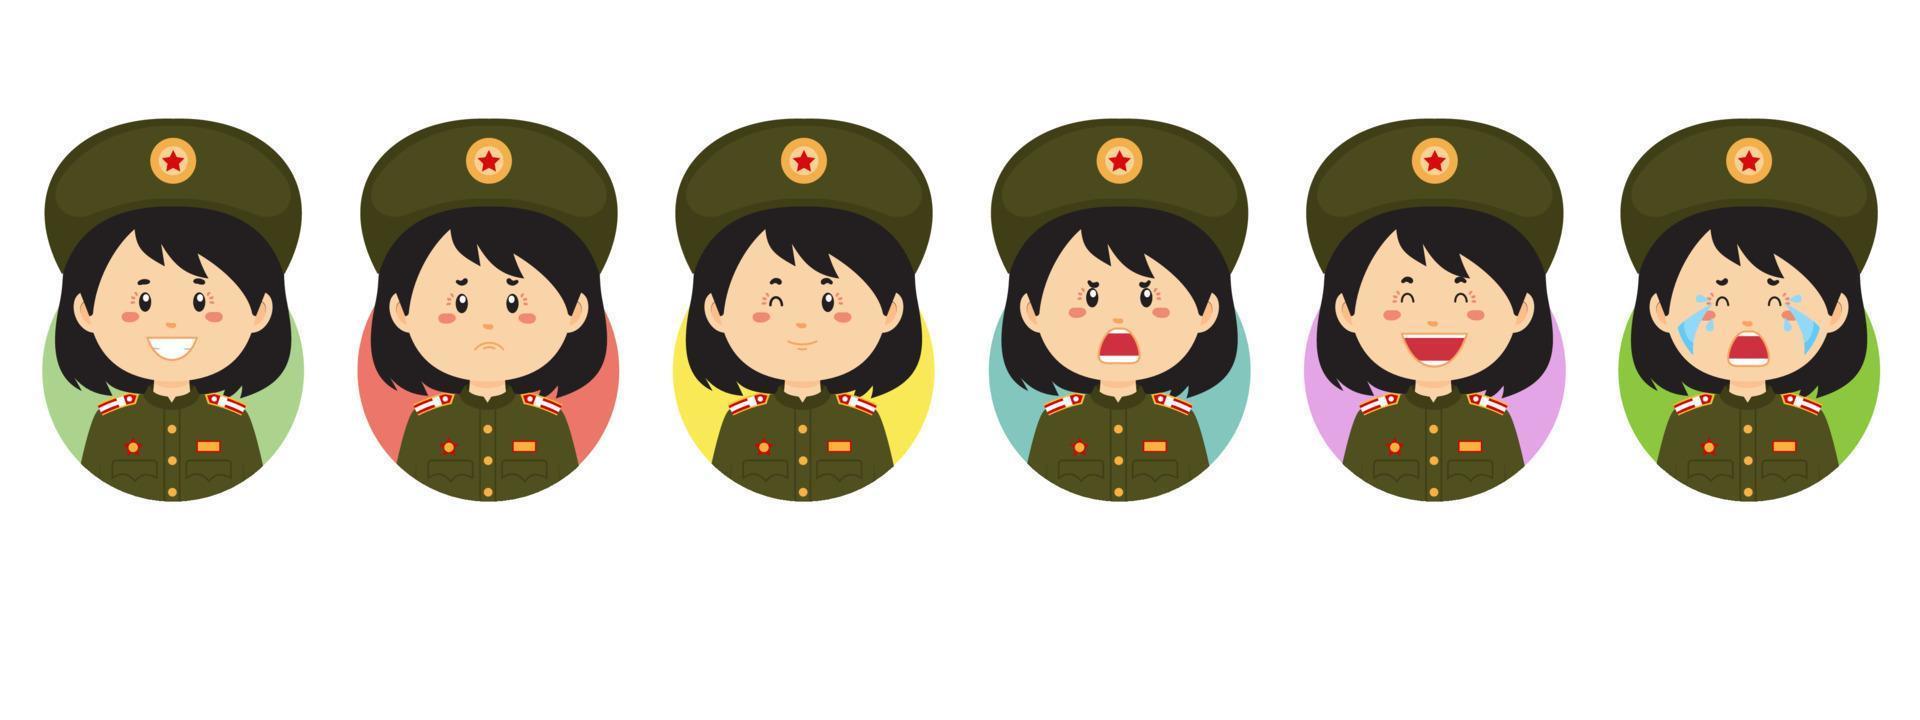 noord-korea avatar met verschillende uitdrukkingen vector